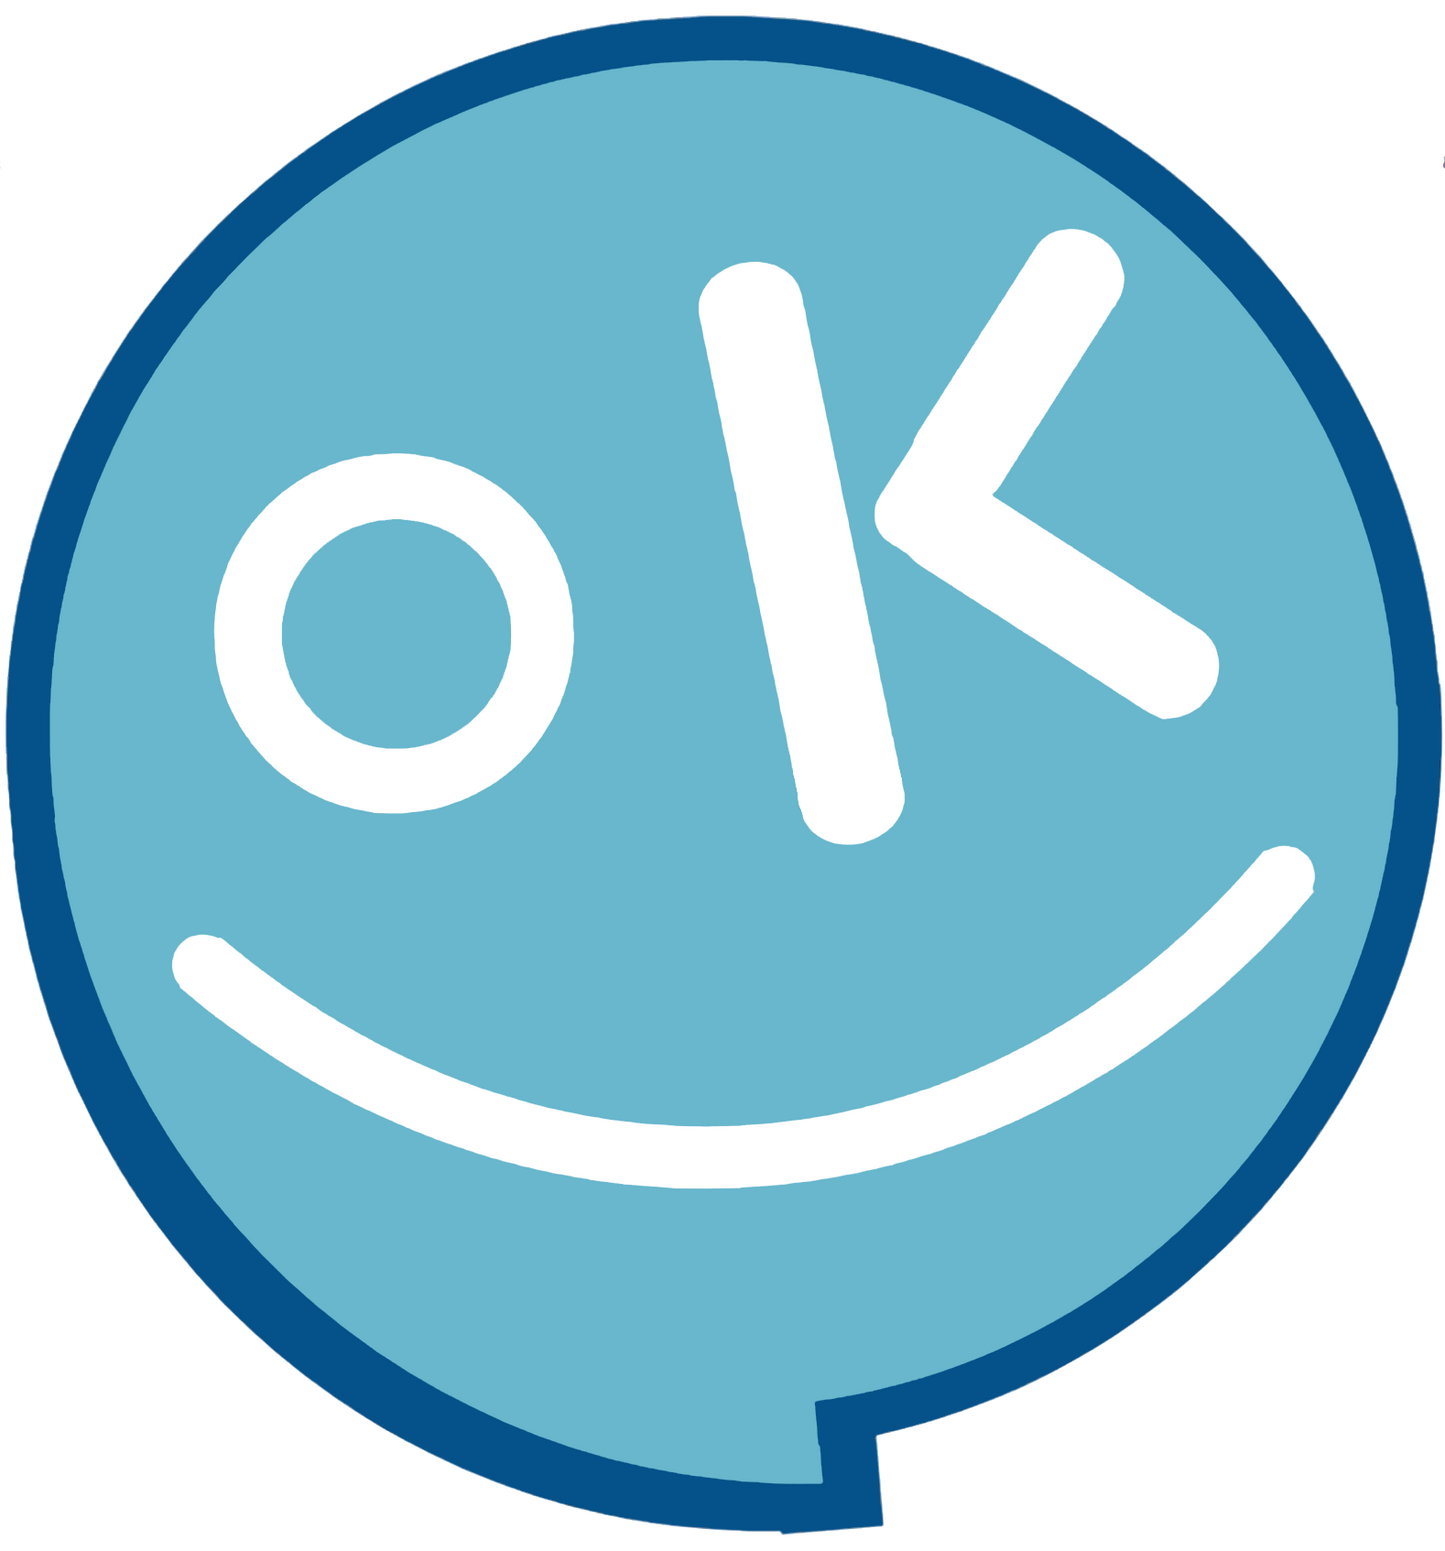 It's Okay Not to be Okay Hospital Logo Sticker